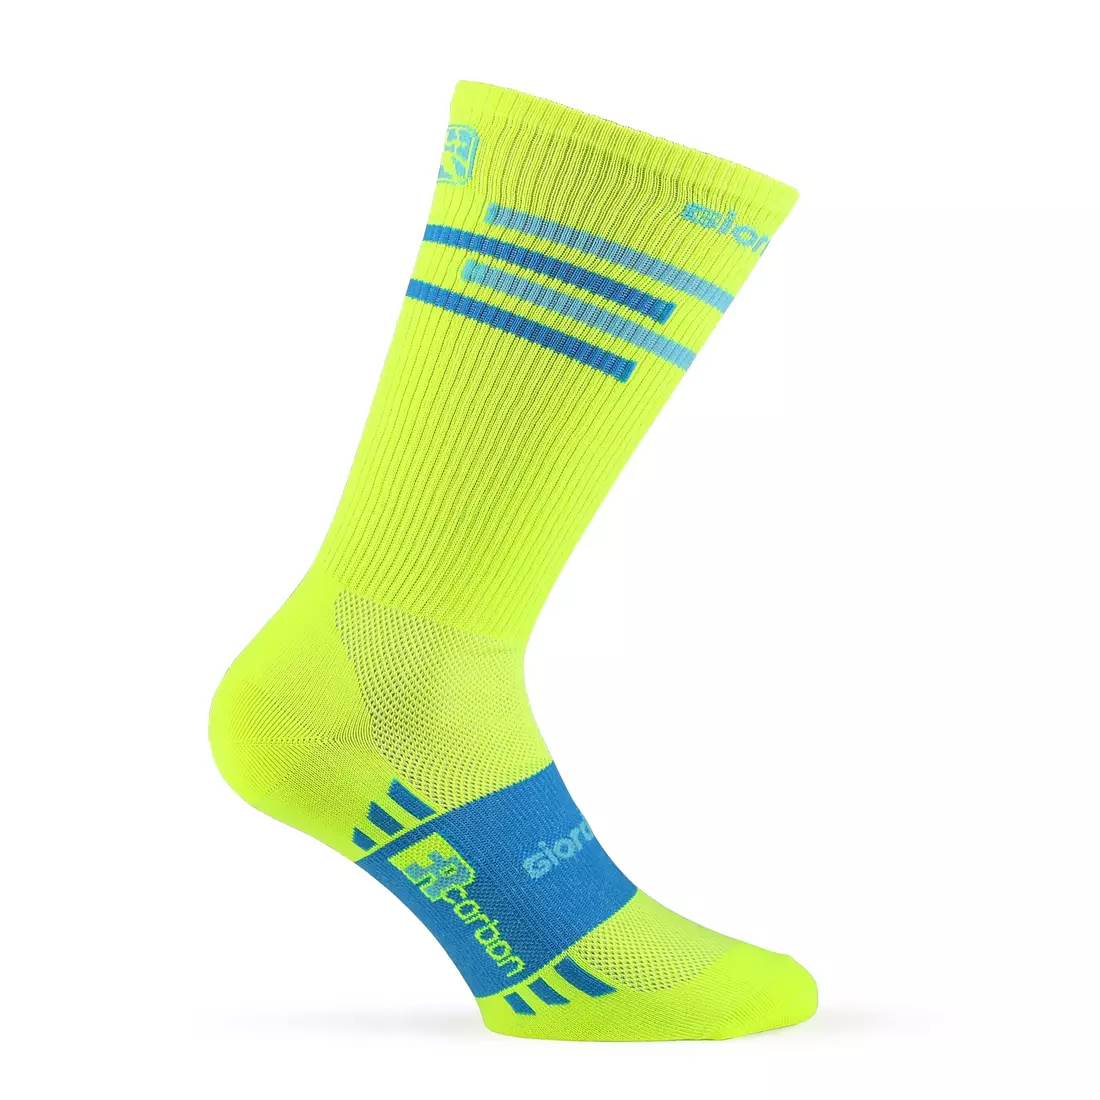 GIORDANA LINES fluoro cycling socks